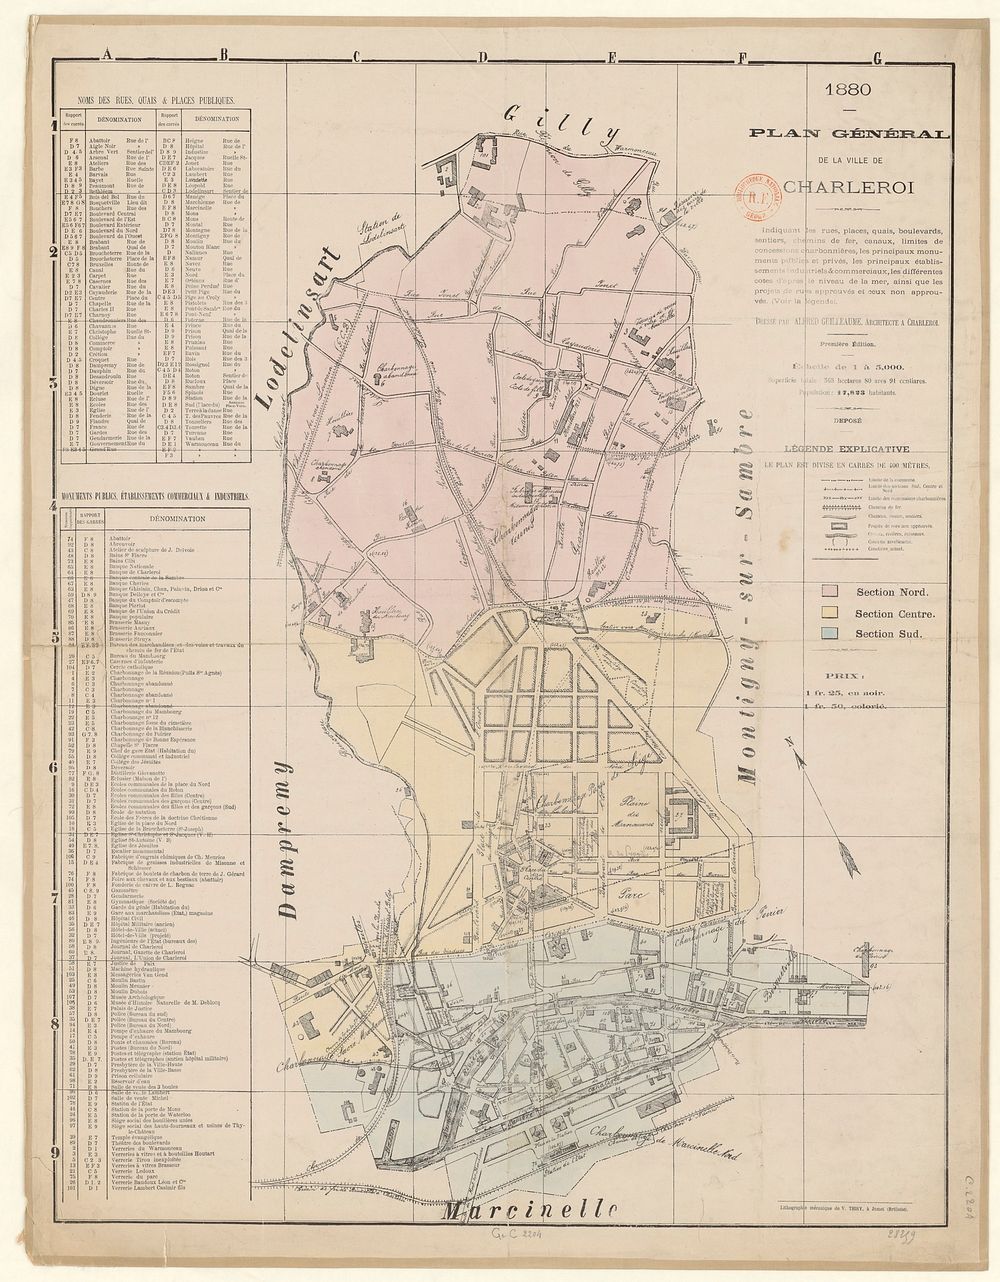 Plan général de la ville de Charleroi - 1880